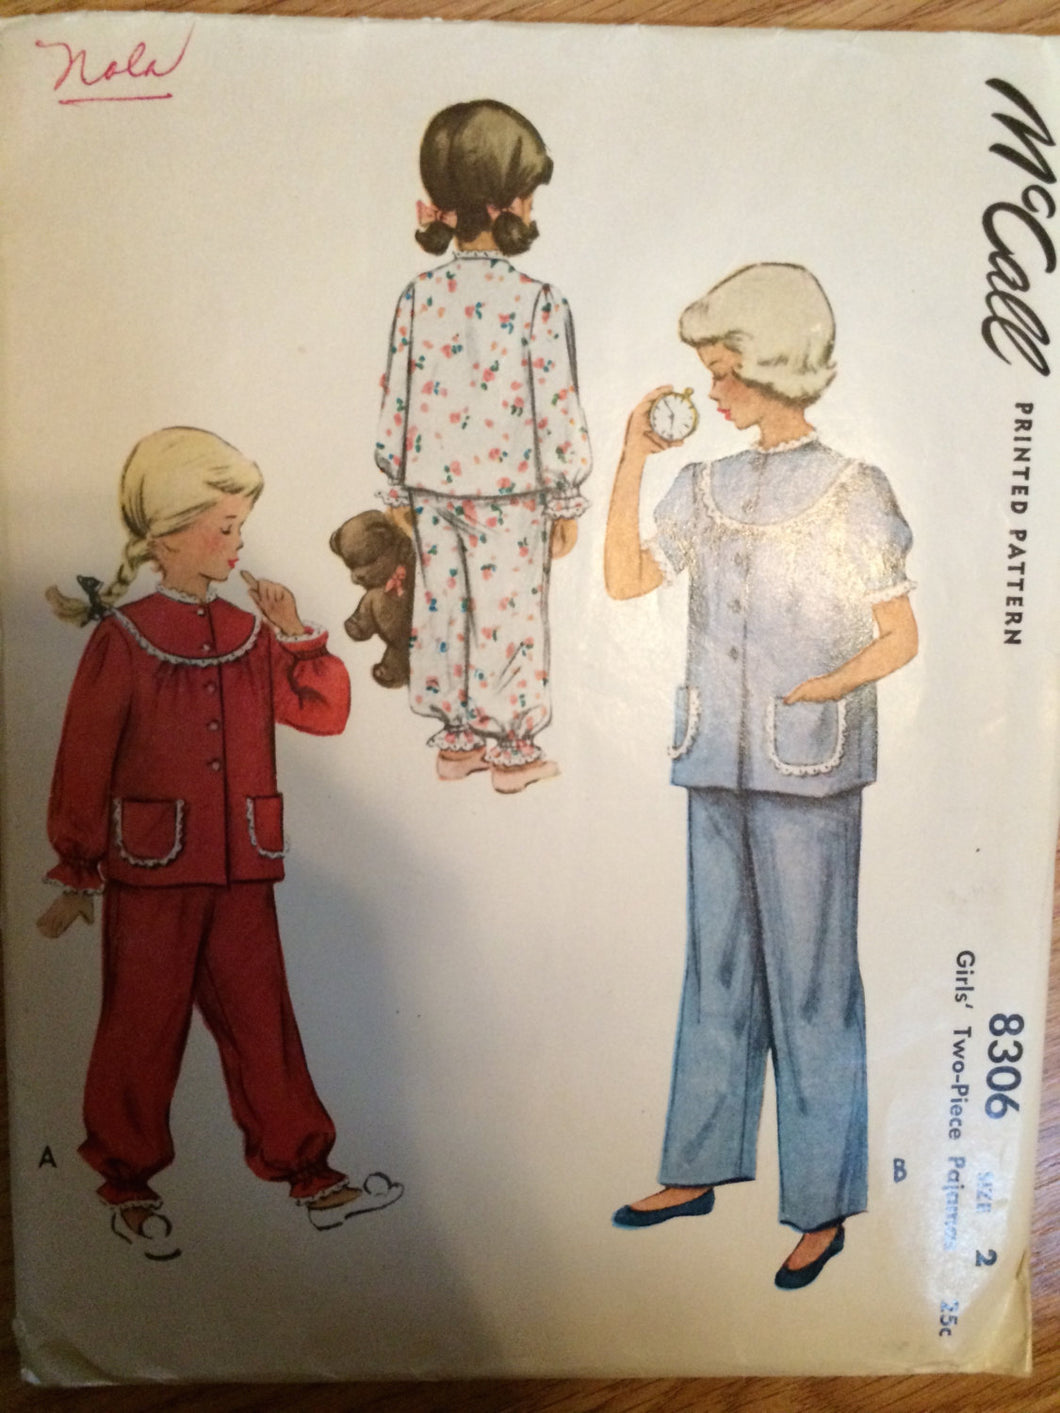 Toddler Pajama Pattern / Vintage Sewing Pattern / Girl's Pajama Pattern / McCall 8306 / Sz 2 Bust 21 / Vintage Pajama / 1950s Fashion